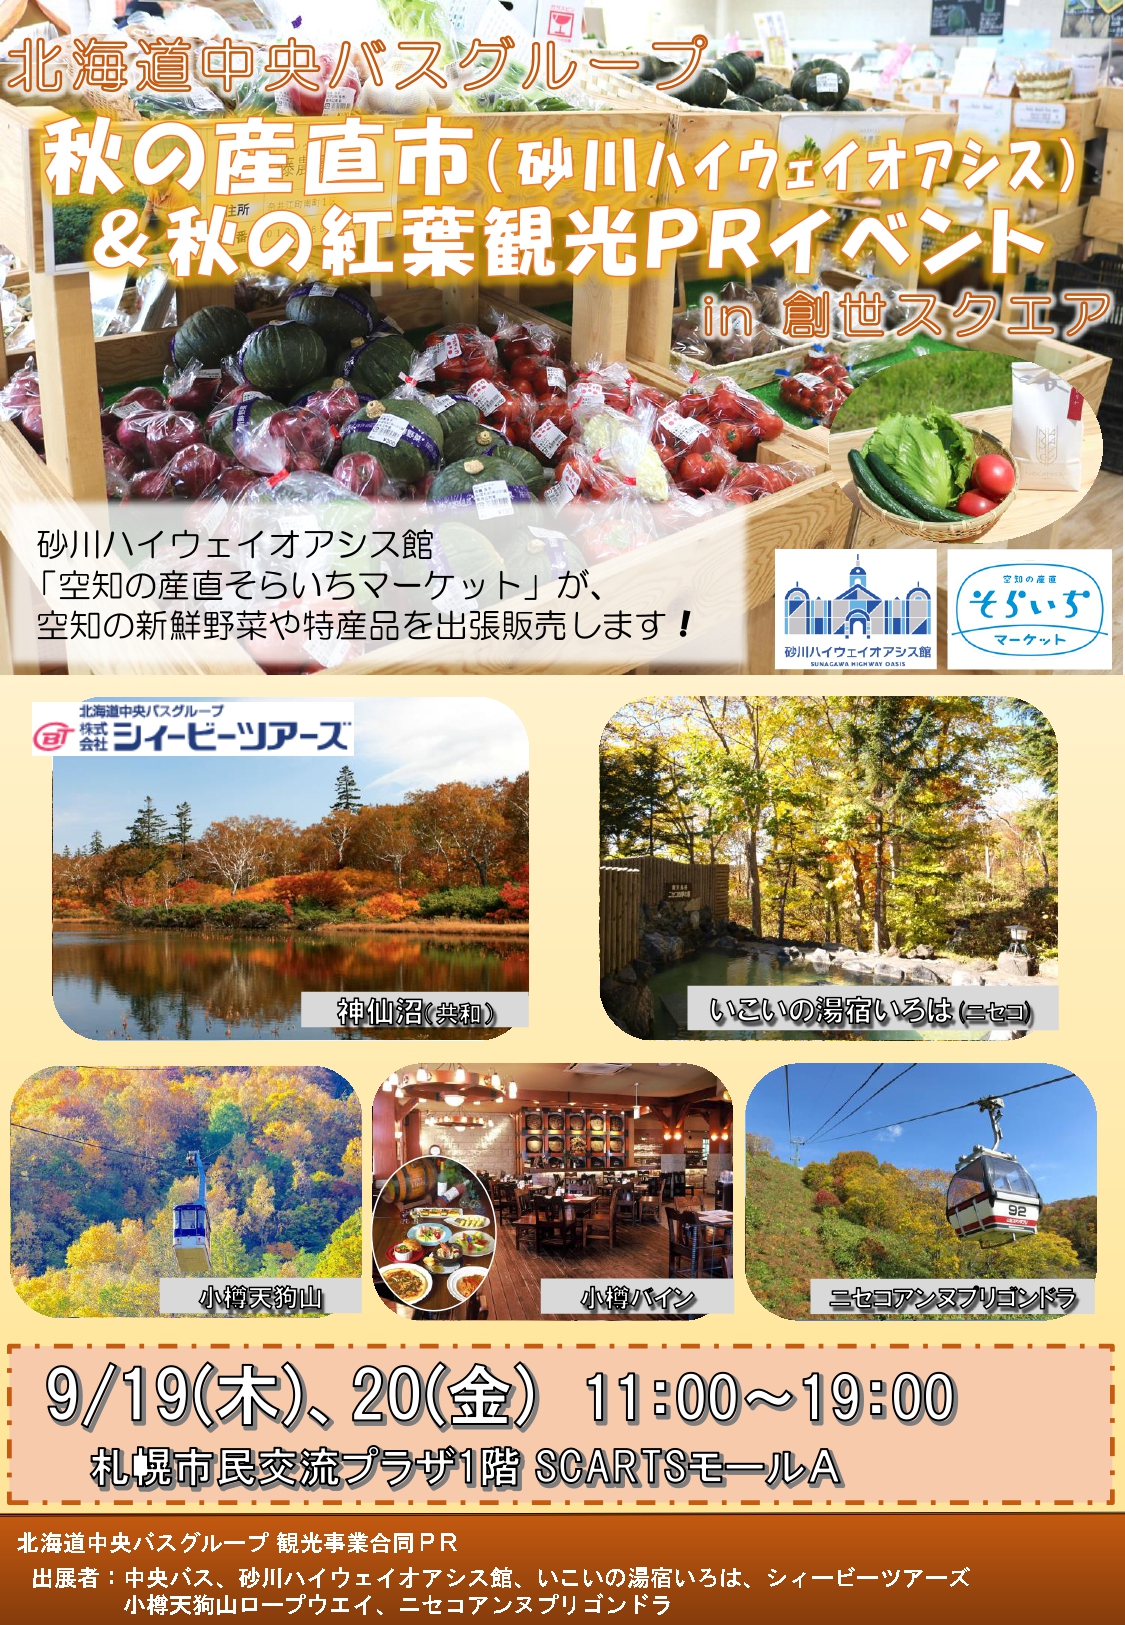 北海道中央バスグループ観光事業合同PRイメージ